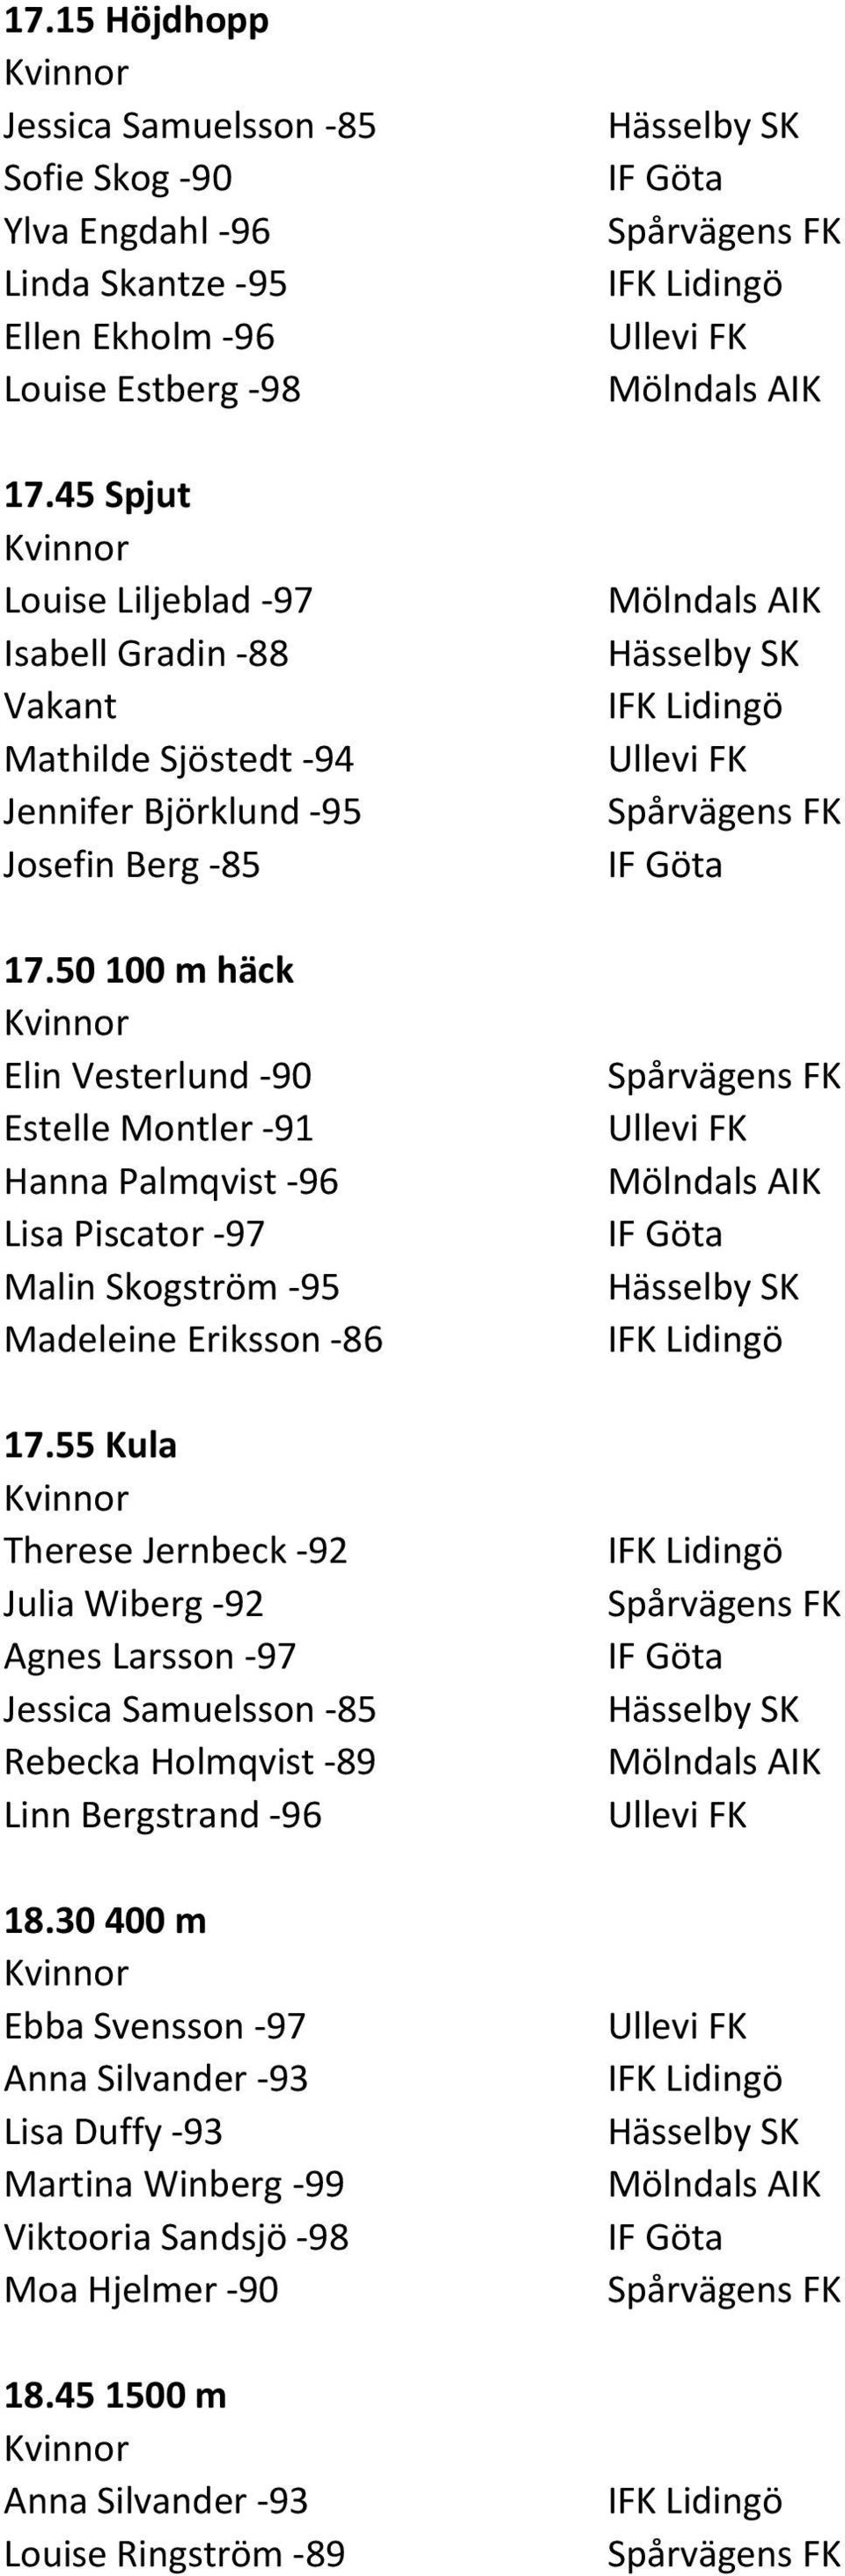 50100 m häck Elin Vesterlund -90 Estelle Montler -91 Hanna Palmqvist -96 Lisa Piscator -97 Malin Skogström -95 Madeleine Eriksson -86 17.